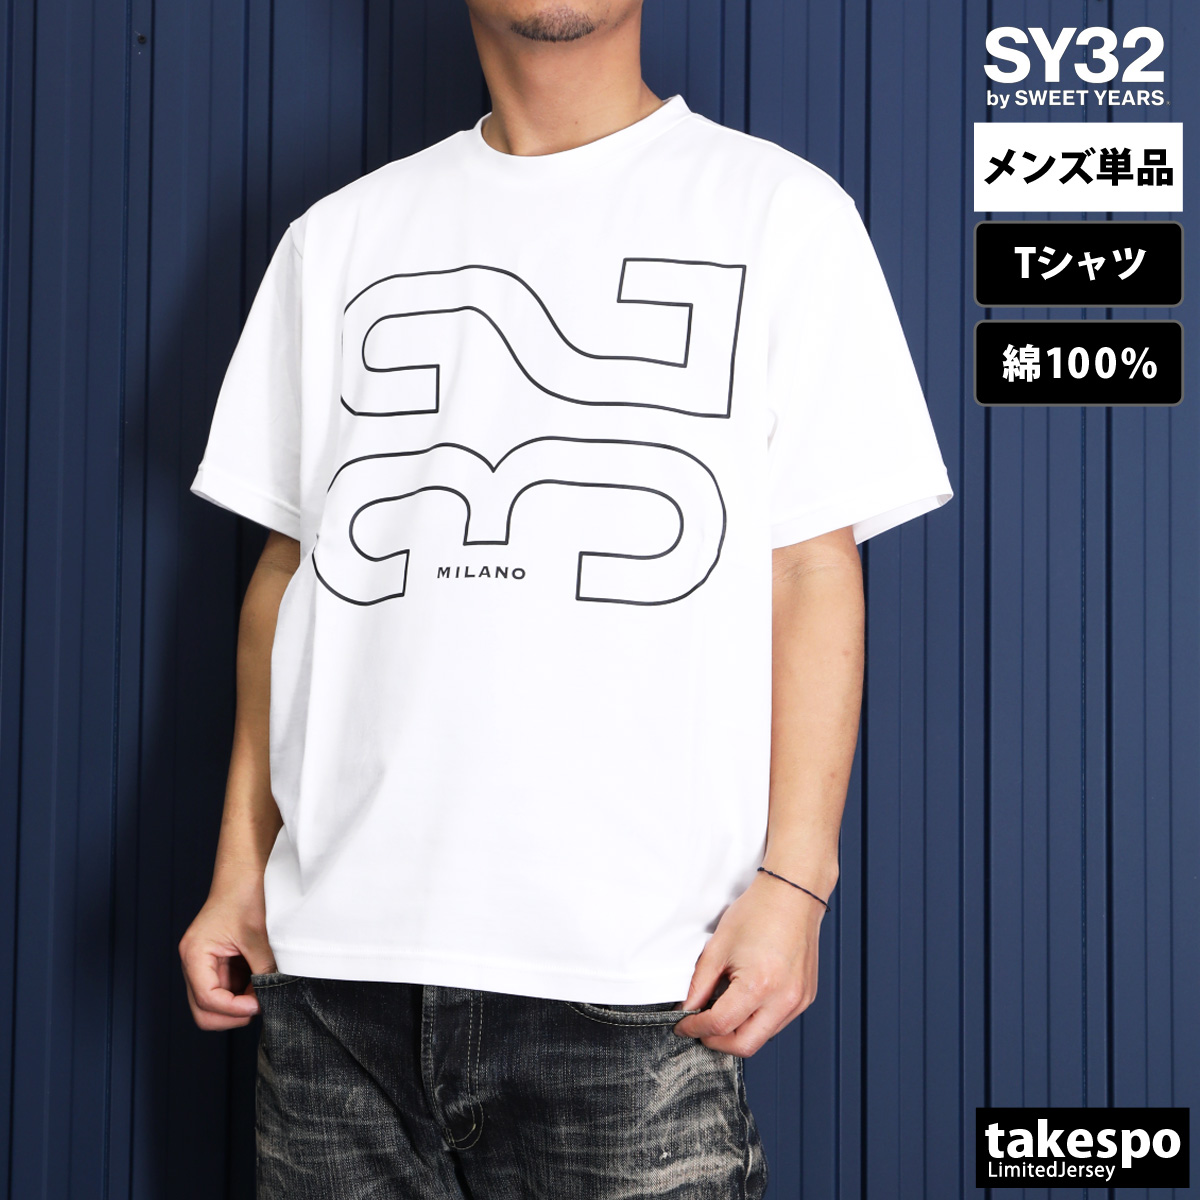 スウィートイヤーズ Tシャツ メンズ 上 SY32 by SWEET YEARS 半袖 ビッグロゴ ...